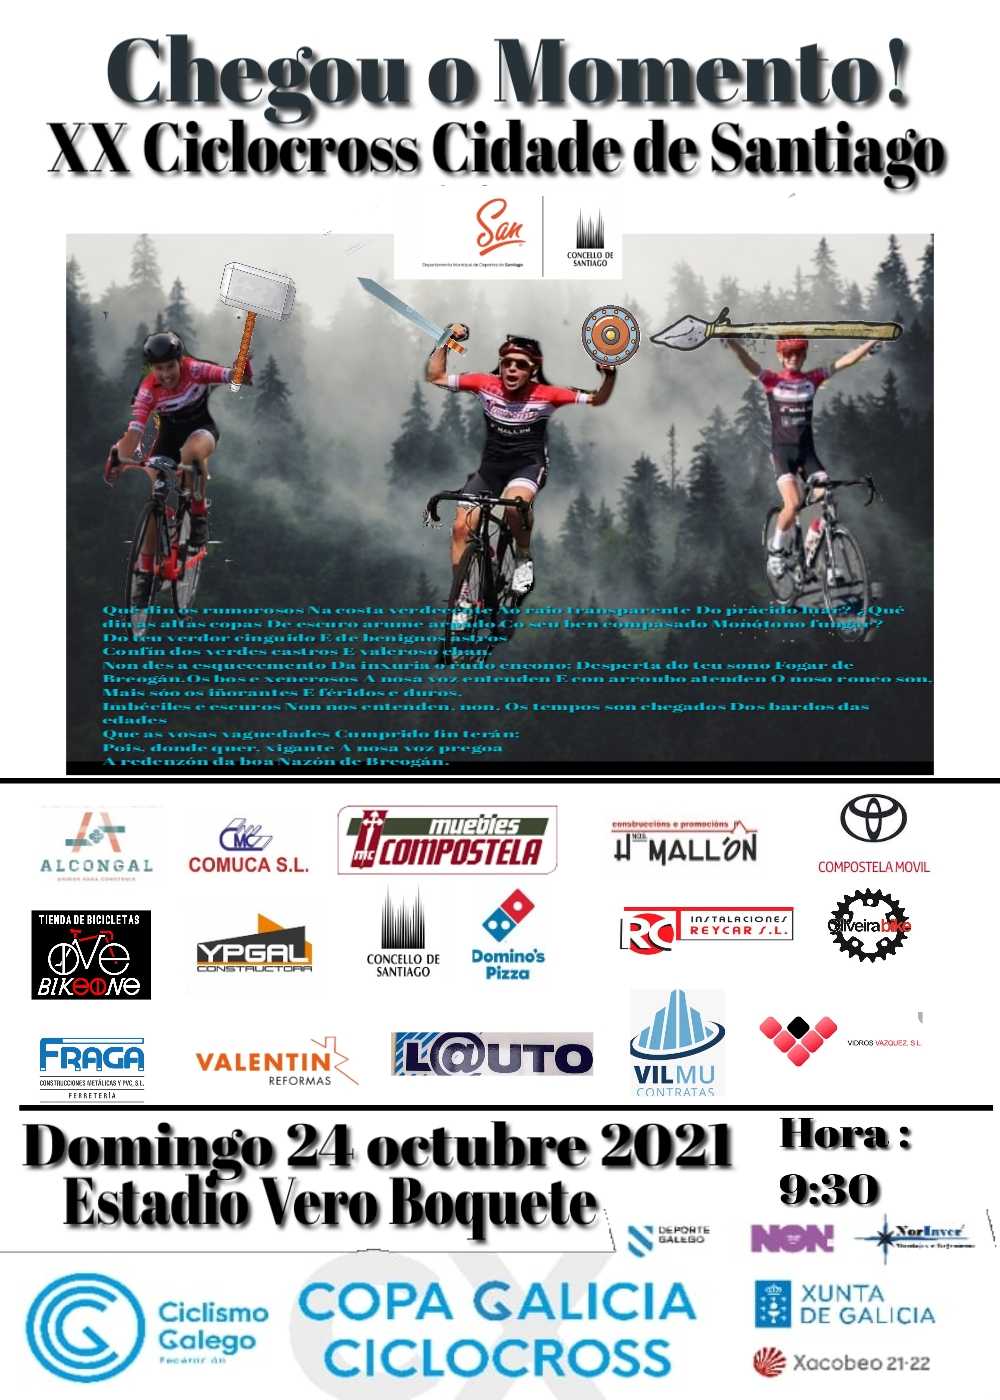 Máis de 300 ciclistas participarán este domingo 24 na XX edición do Ciclocross Cidade de Santiago